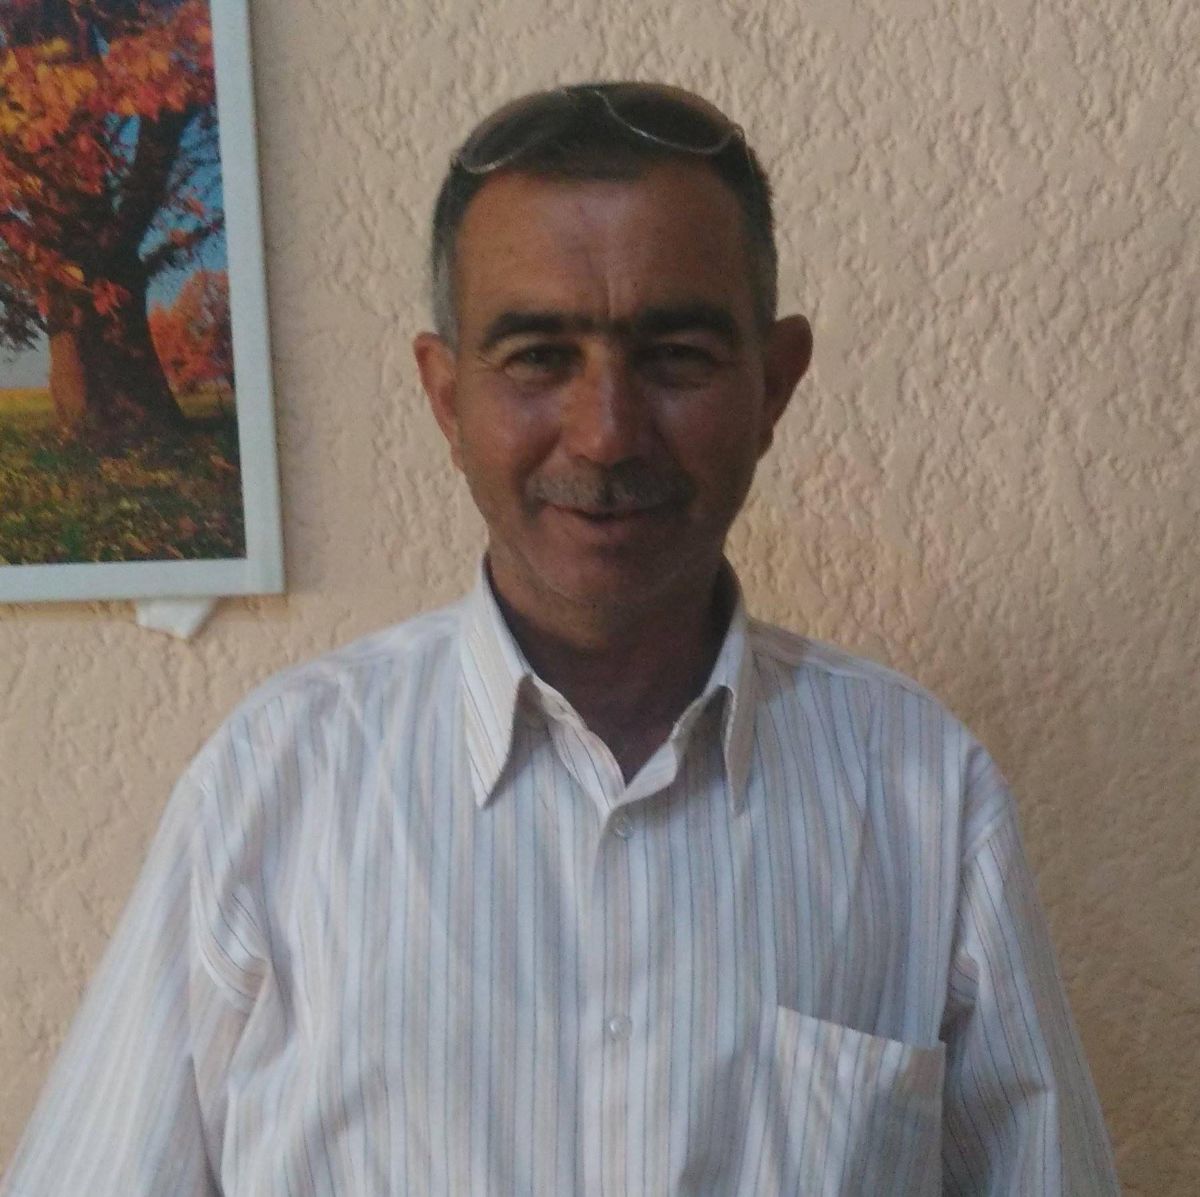 İzmir deki cinayetin zanlısı, 30 yıllık arkadaş çıktı #1